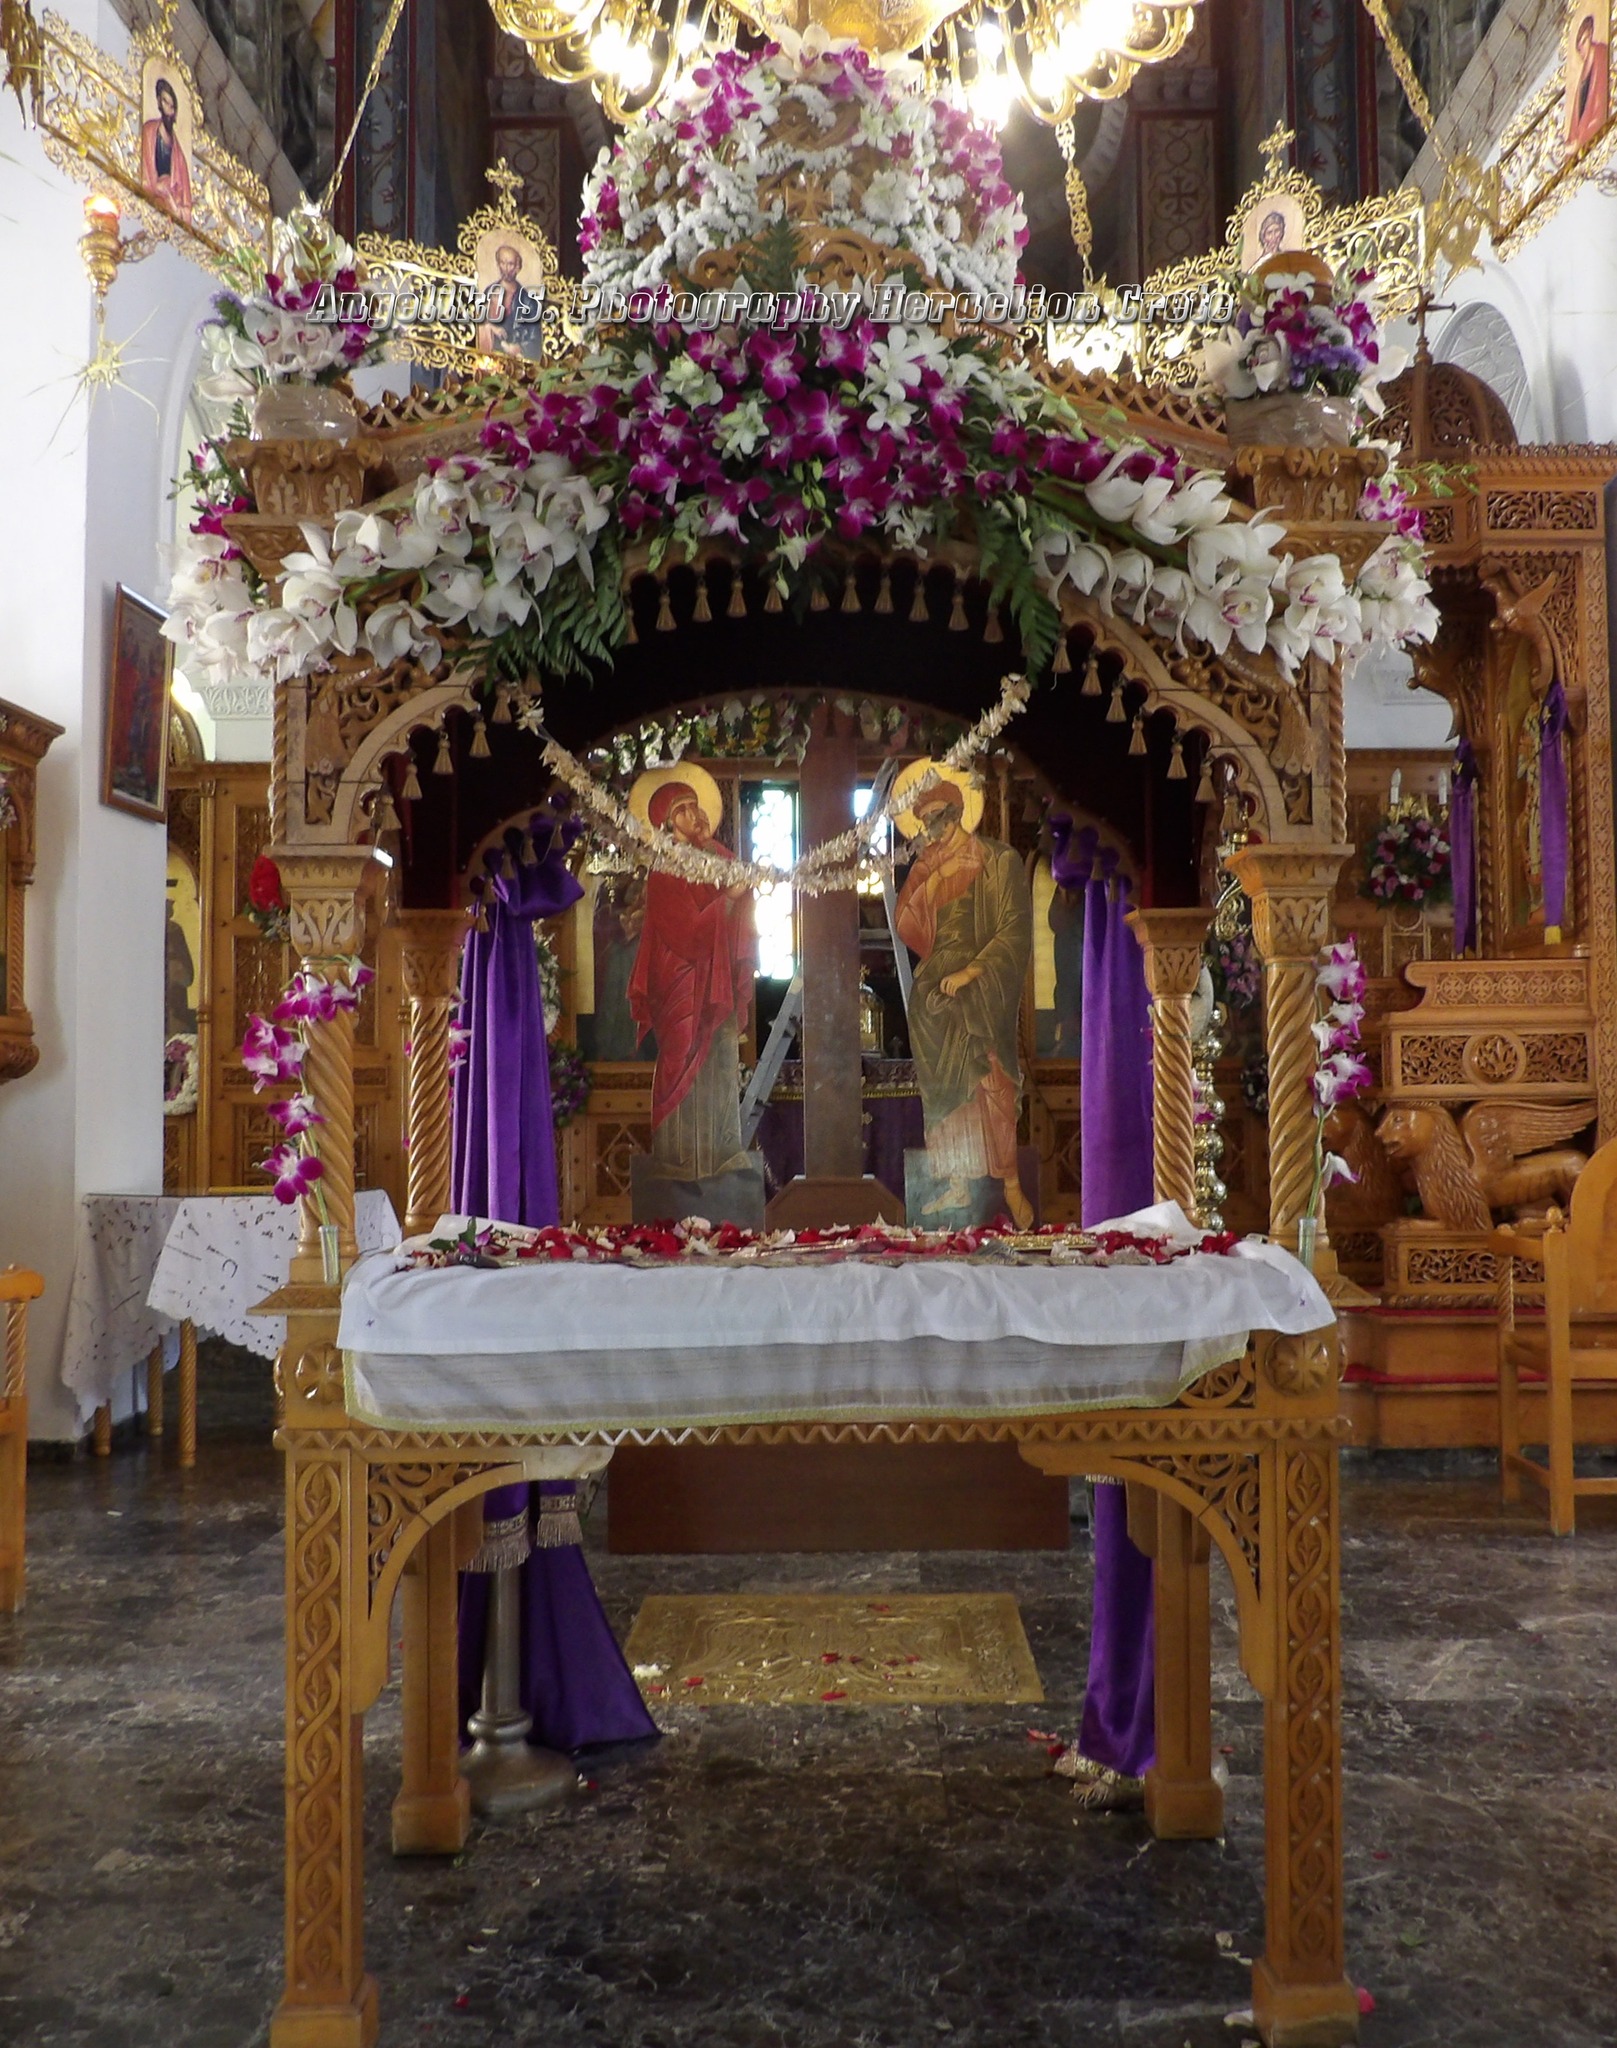 Ιερός Ναός Αγίας Σοφίας Νέων ΚλαζομενώνAngeliki S. Photography Heraclion Crete